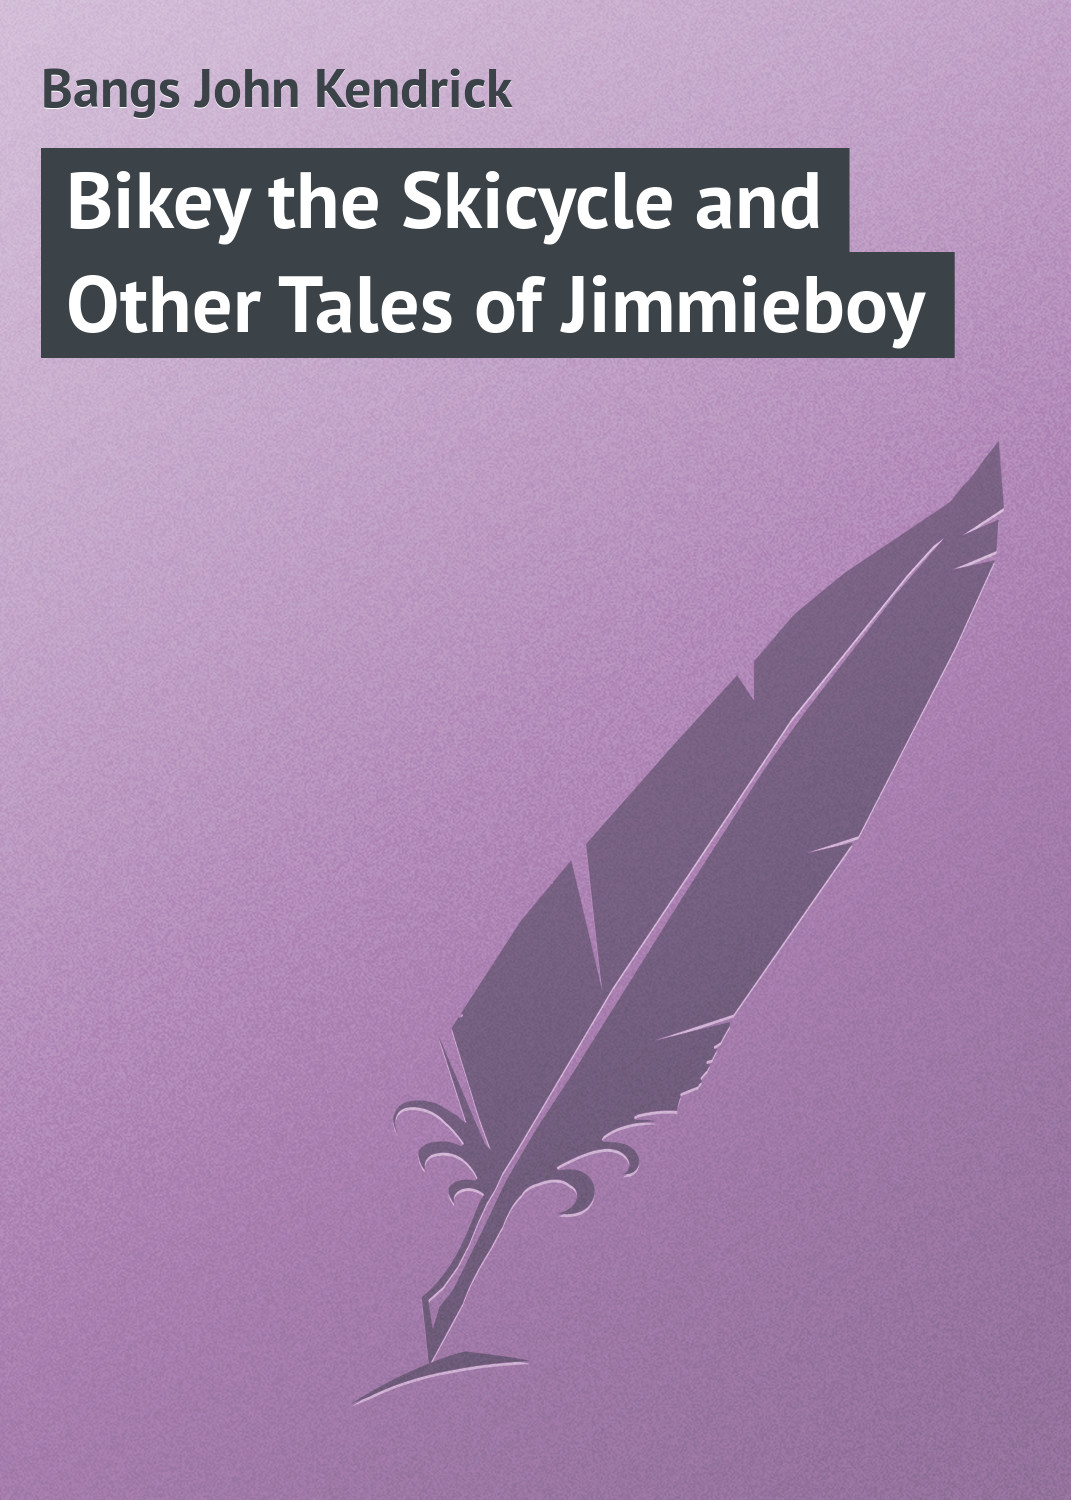 Книга Bikey the Skicycle and Other Tales of Jimmieboy из серии , созданная John Bangs, может относится к жанру Зарубежная классика. Стоимость электронной книги Bikey the Skicycle and Other Tales of Jimmieboy с идентификатором 23148003 составляет 5.99 руб.